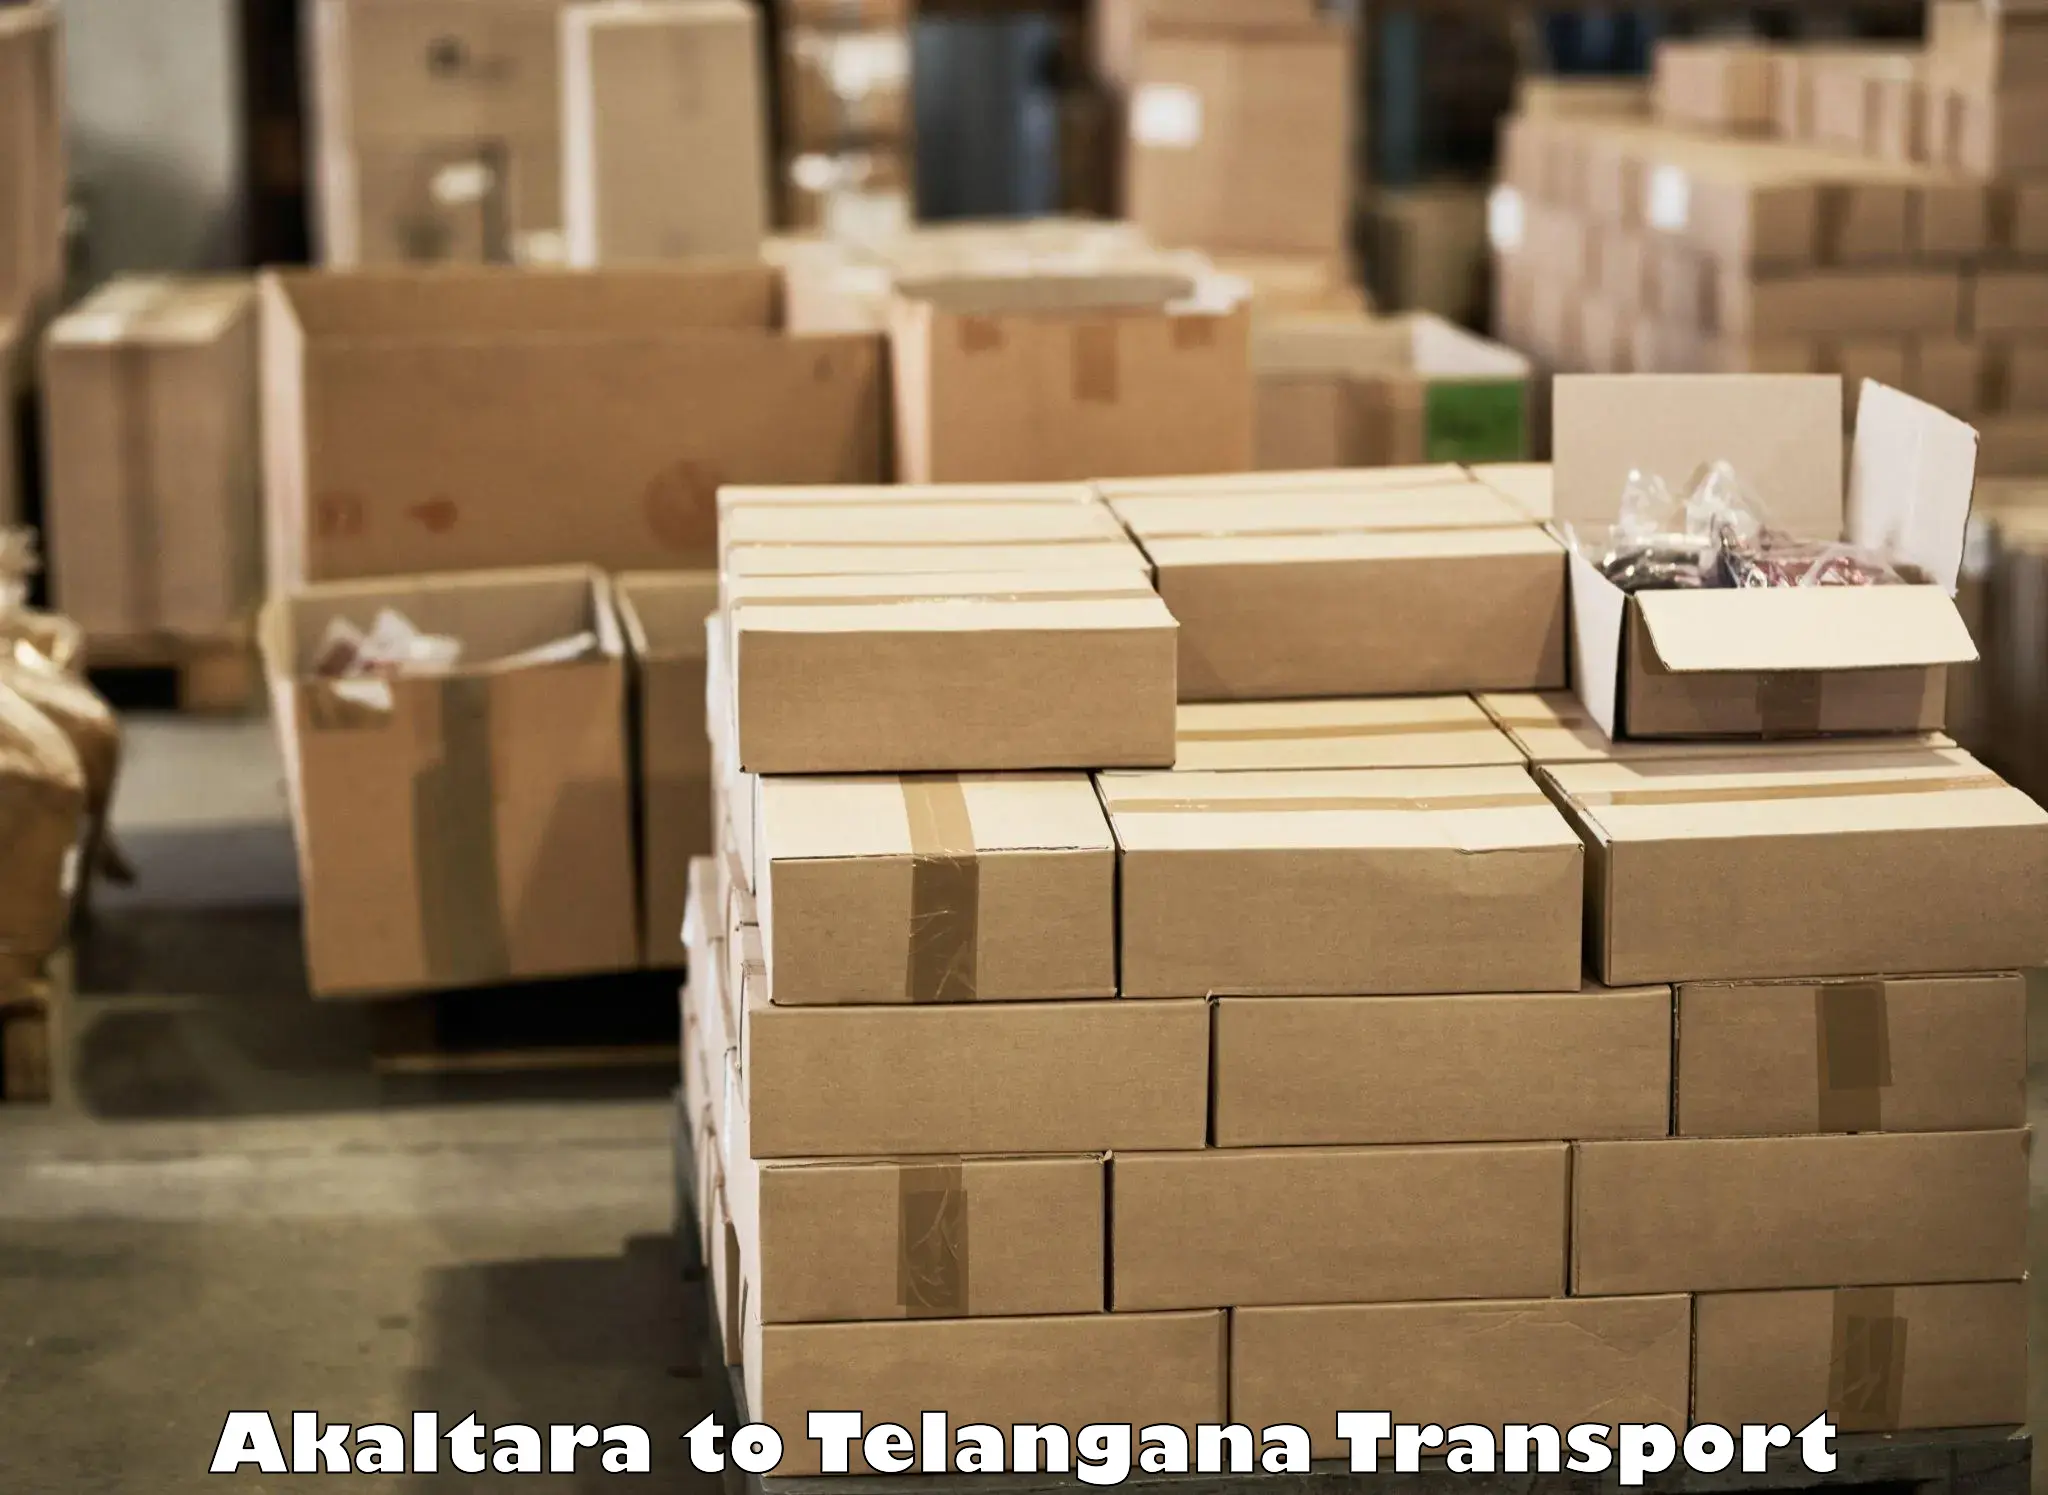 Truck transport companies in India Akaltara to Yellareddipet